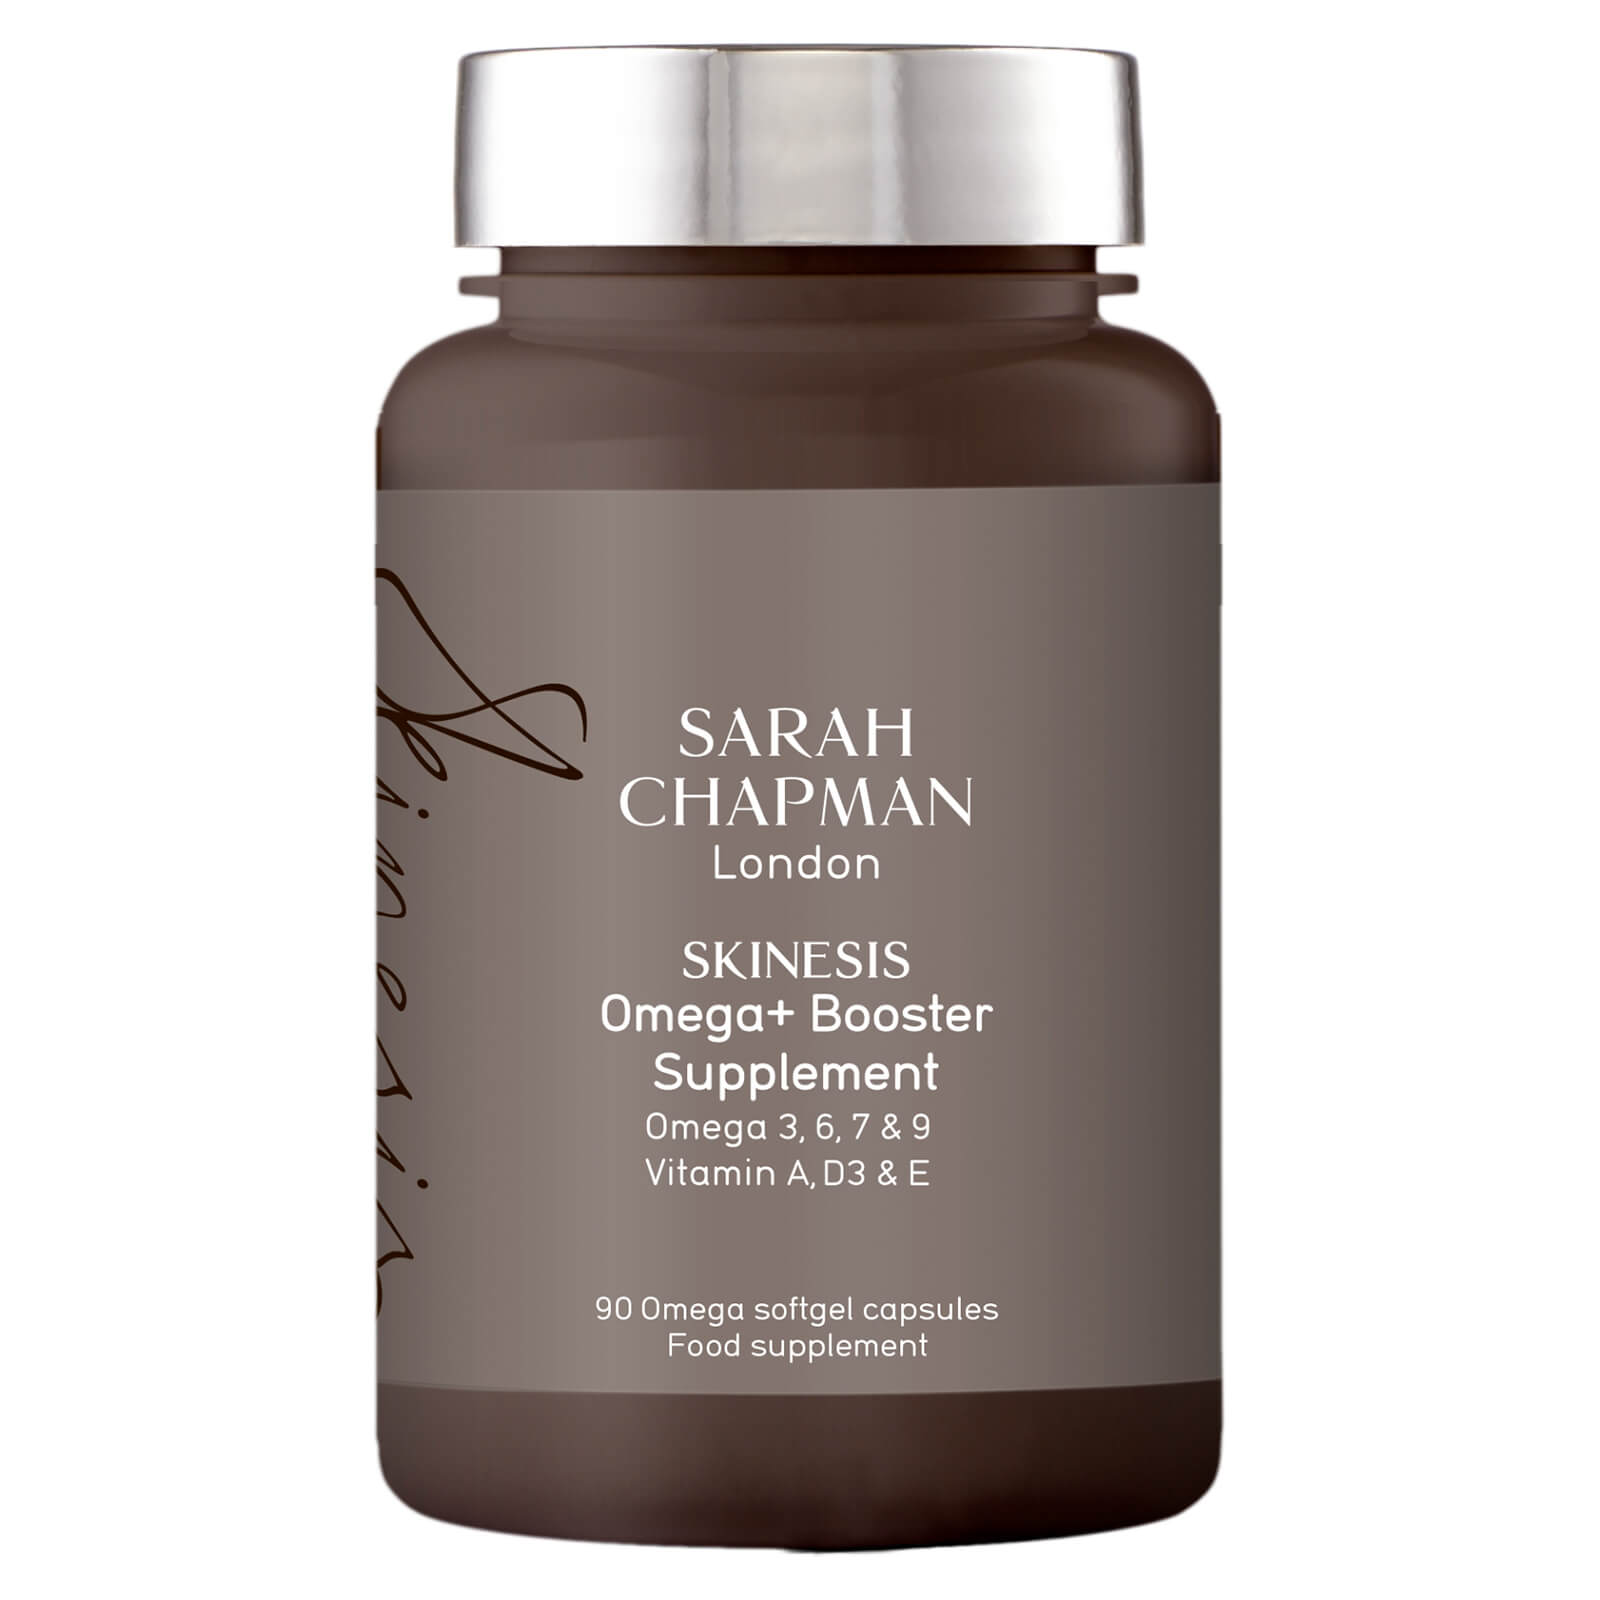 Sarah Chapman Skinesis Omega+ Booster Supplement (90 Cápsulas)